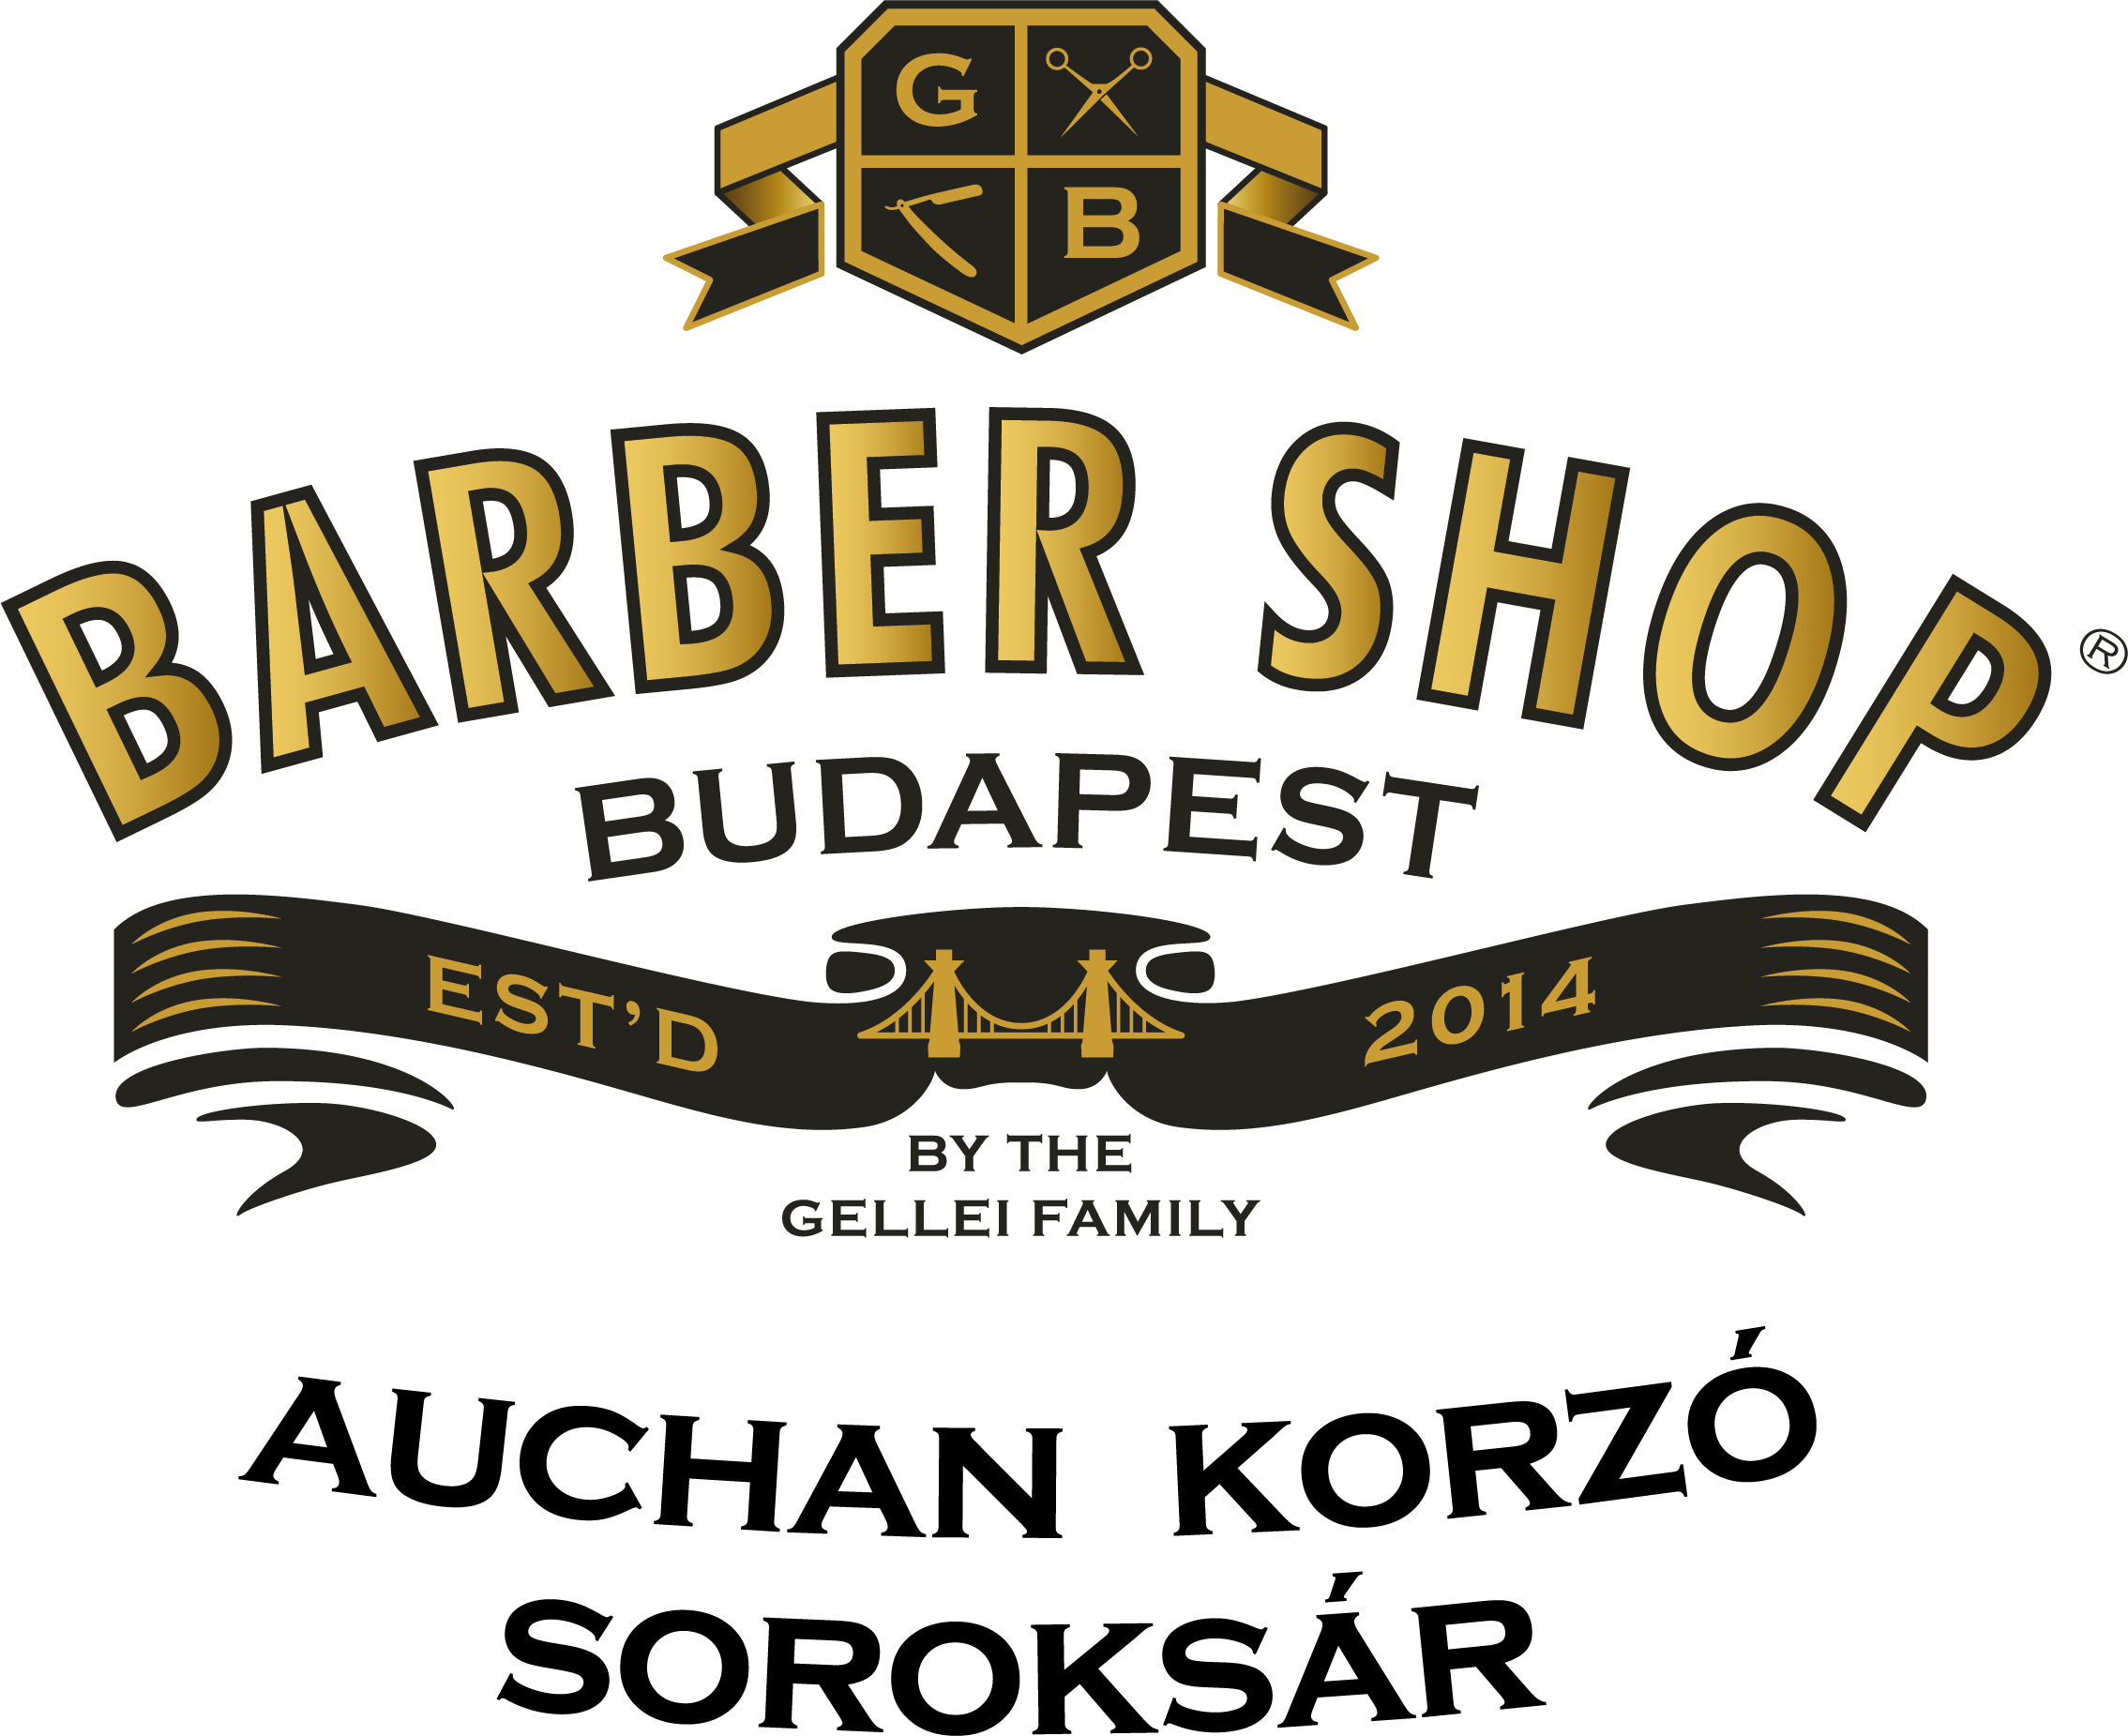 Barber Shop Budapest – Auchan